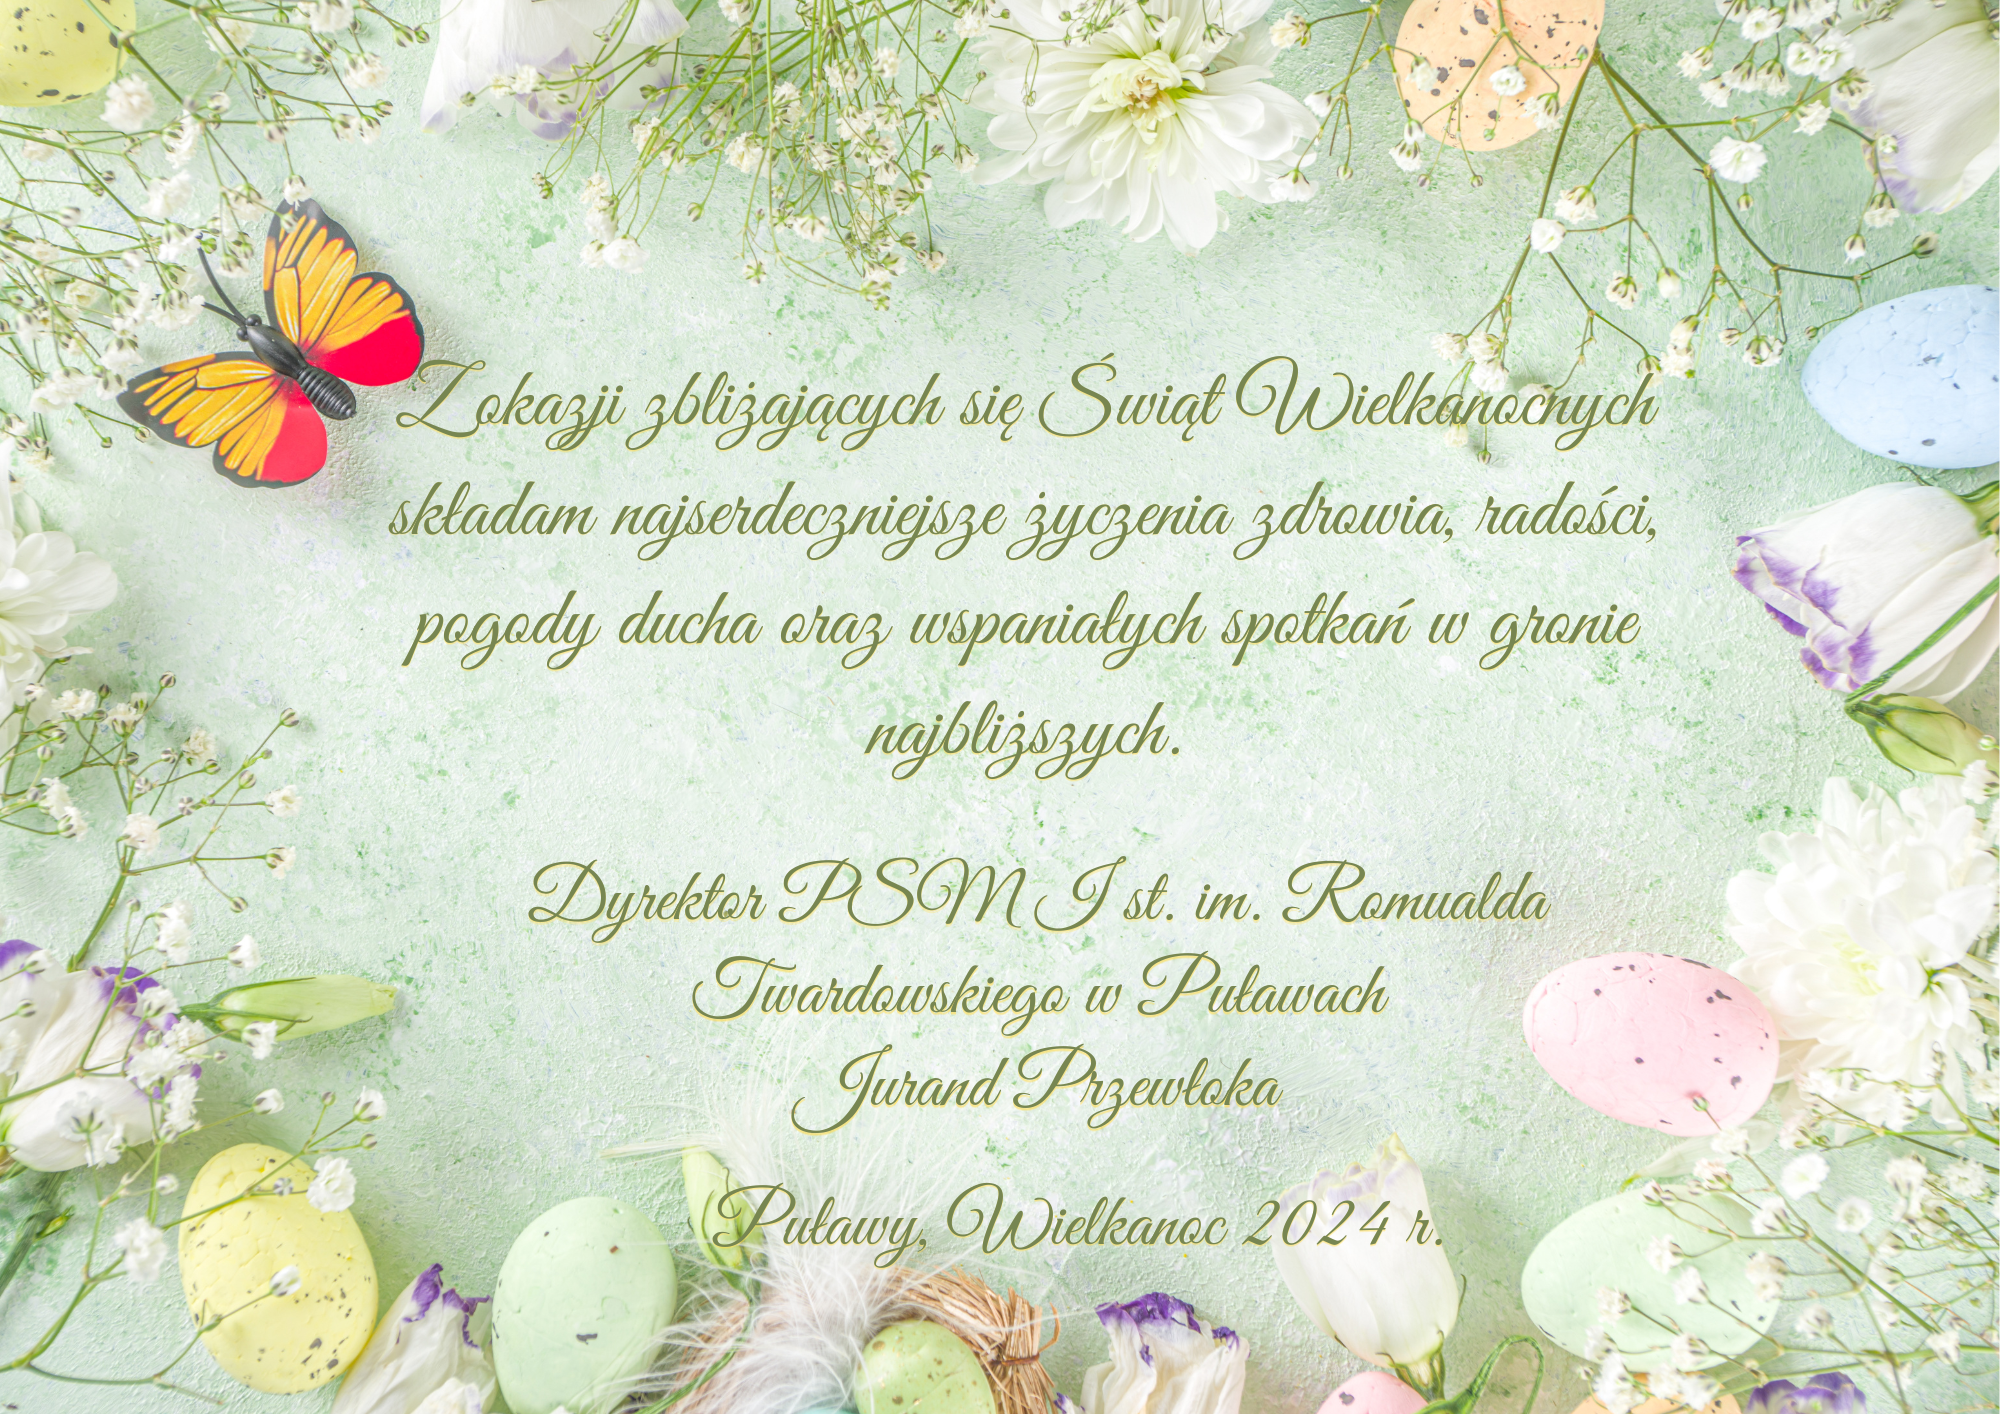 Życzenia Wielkanocne na zielonym tle ze zdjęciem kolorowych jajek i wiosennych kwiatów